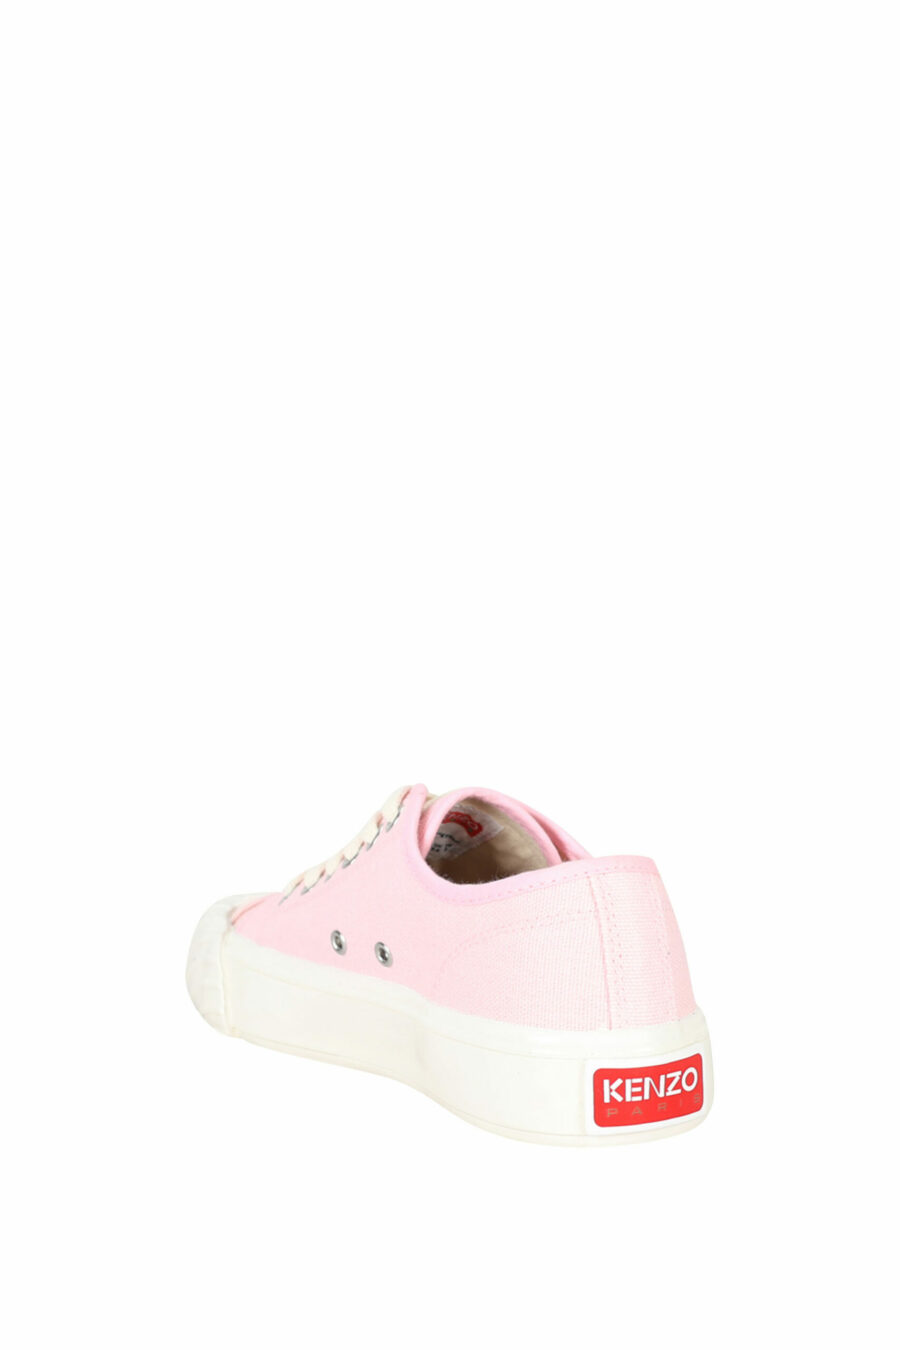 Zapatillas rosa "kenzo school" con logo "boke flower" - 3612230484559 3 scaled